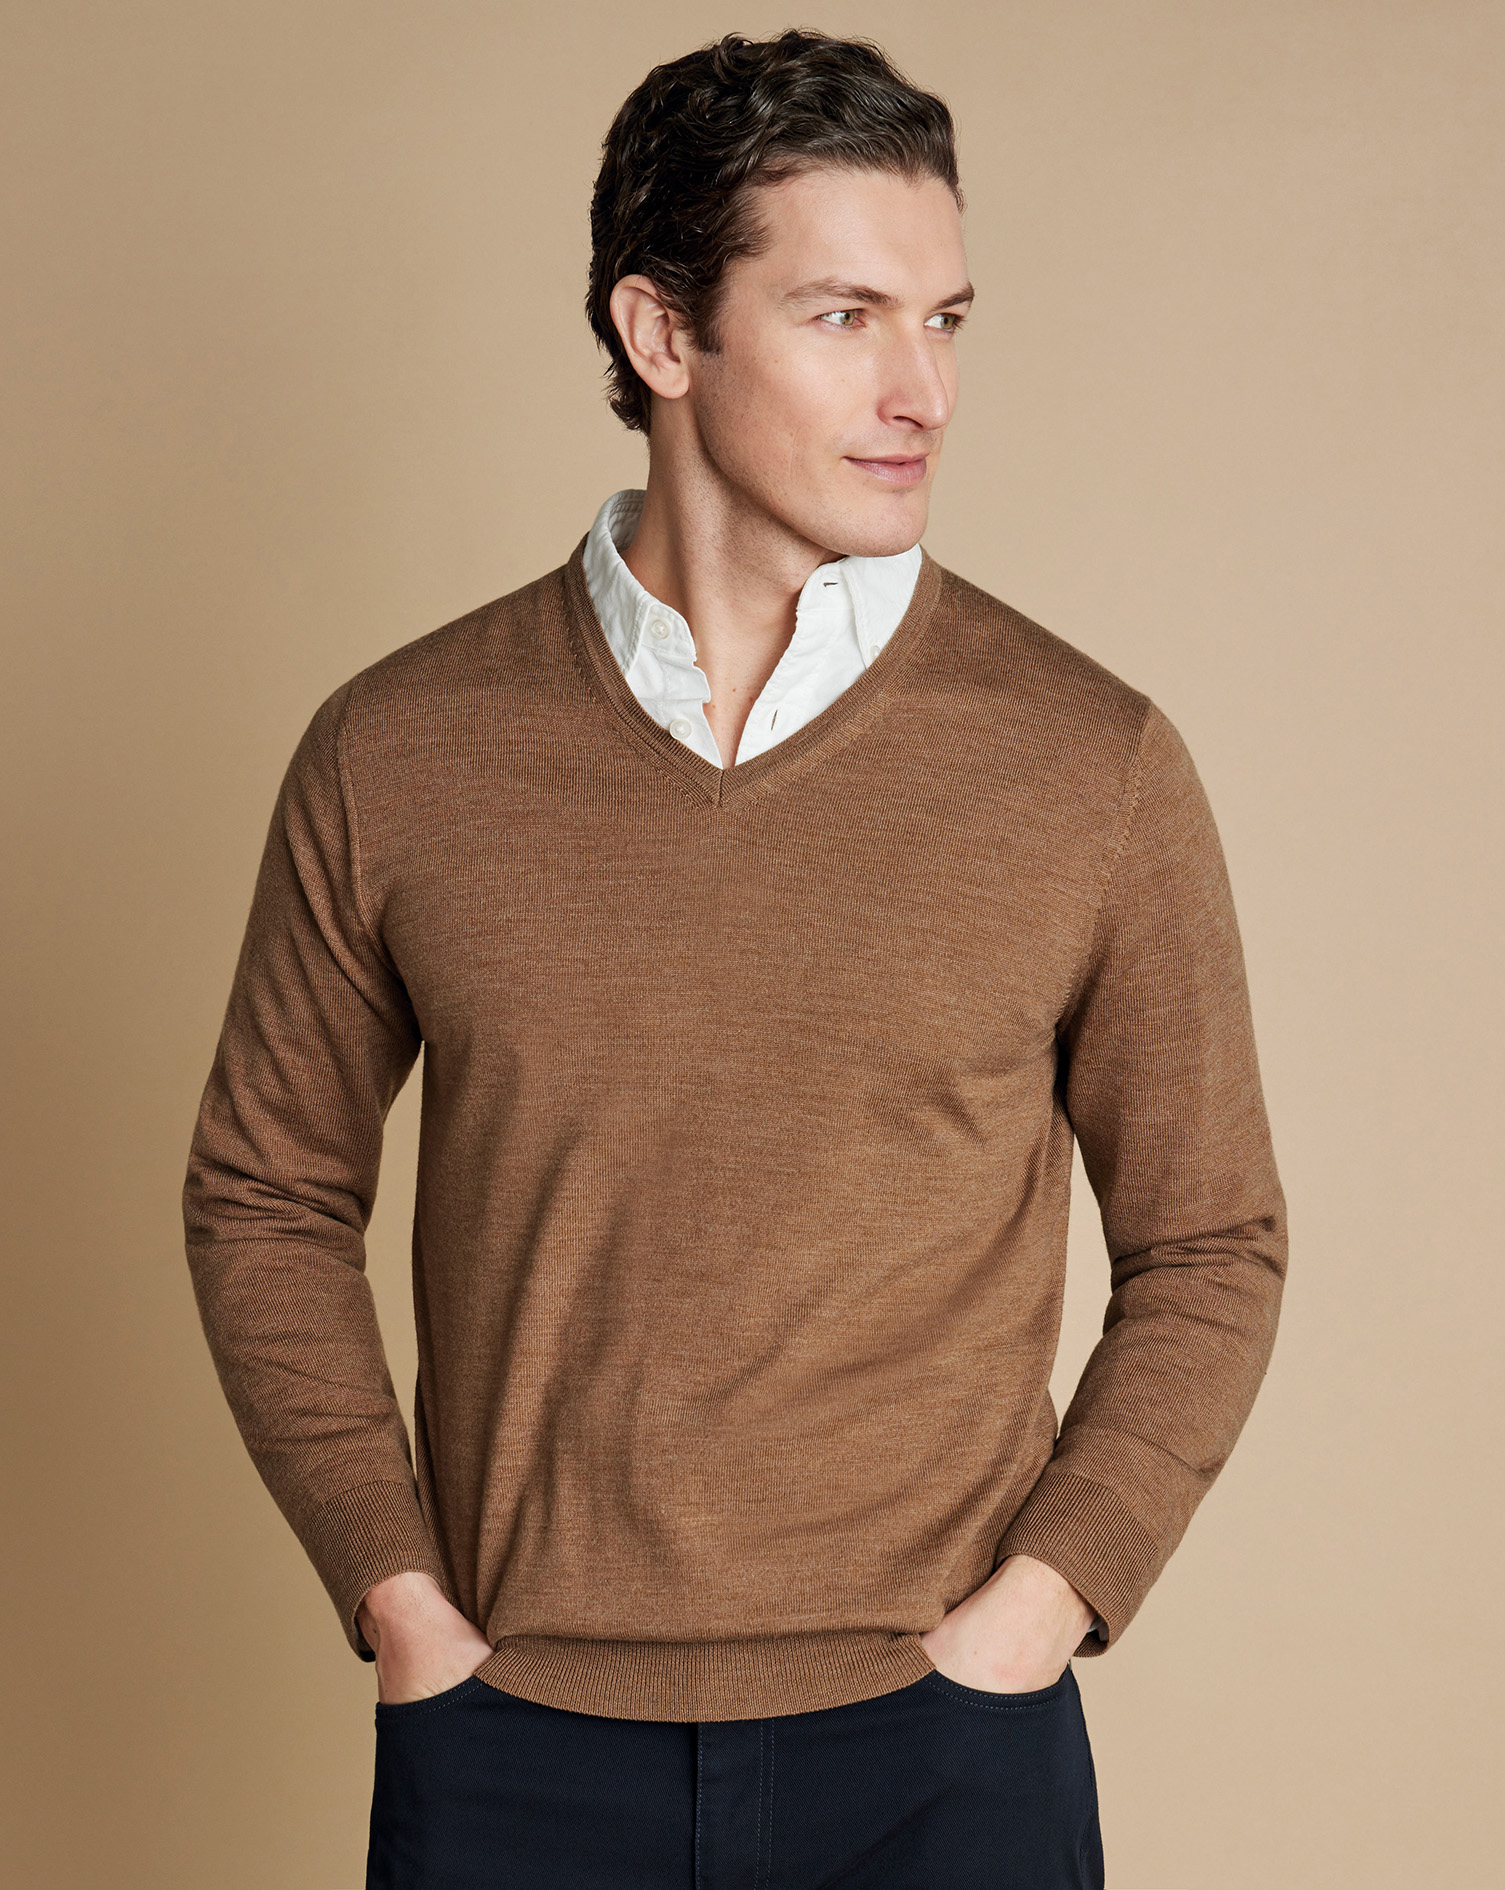 Men's Charles Tyrwhitt Merino V-Neck Sweater - Sand Brown Neutral Size XXXL Wool
